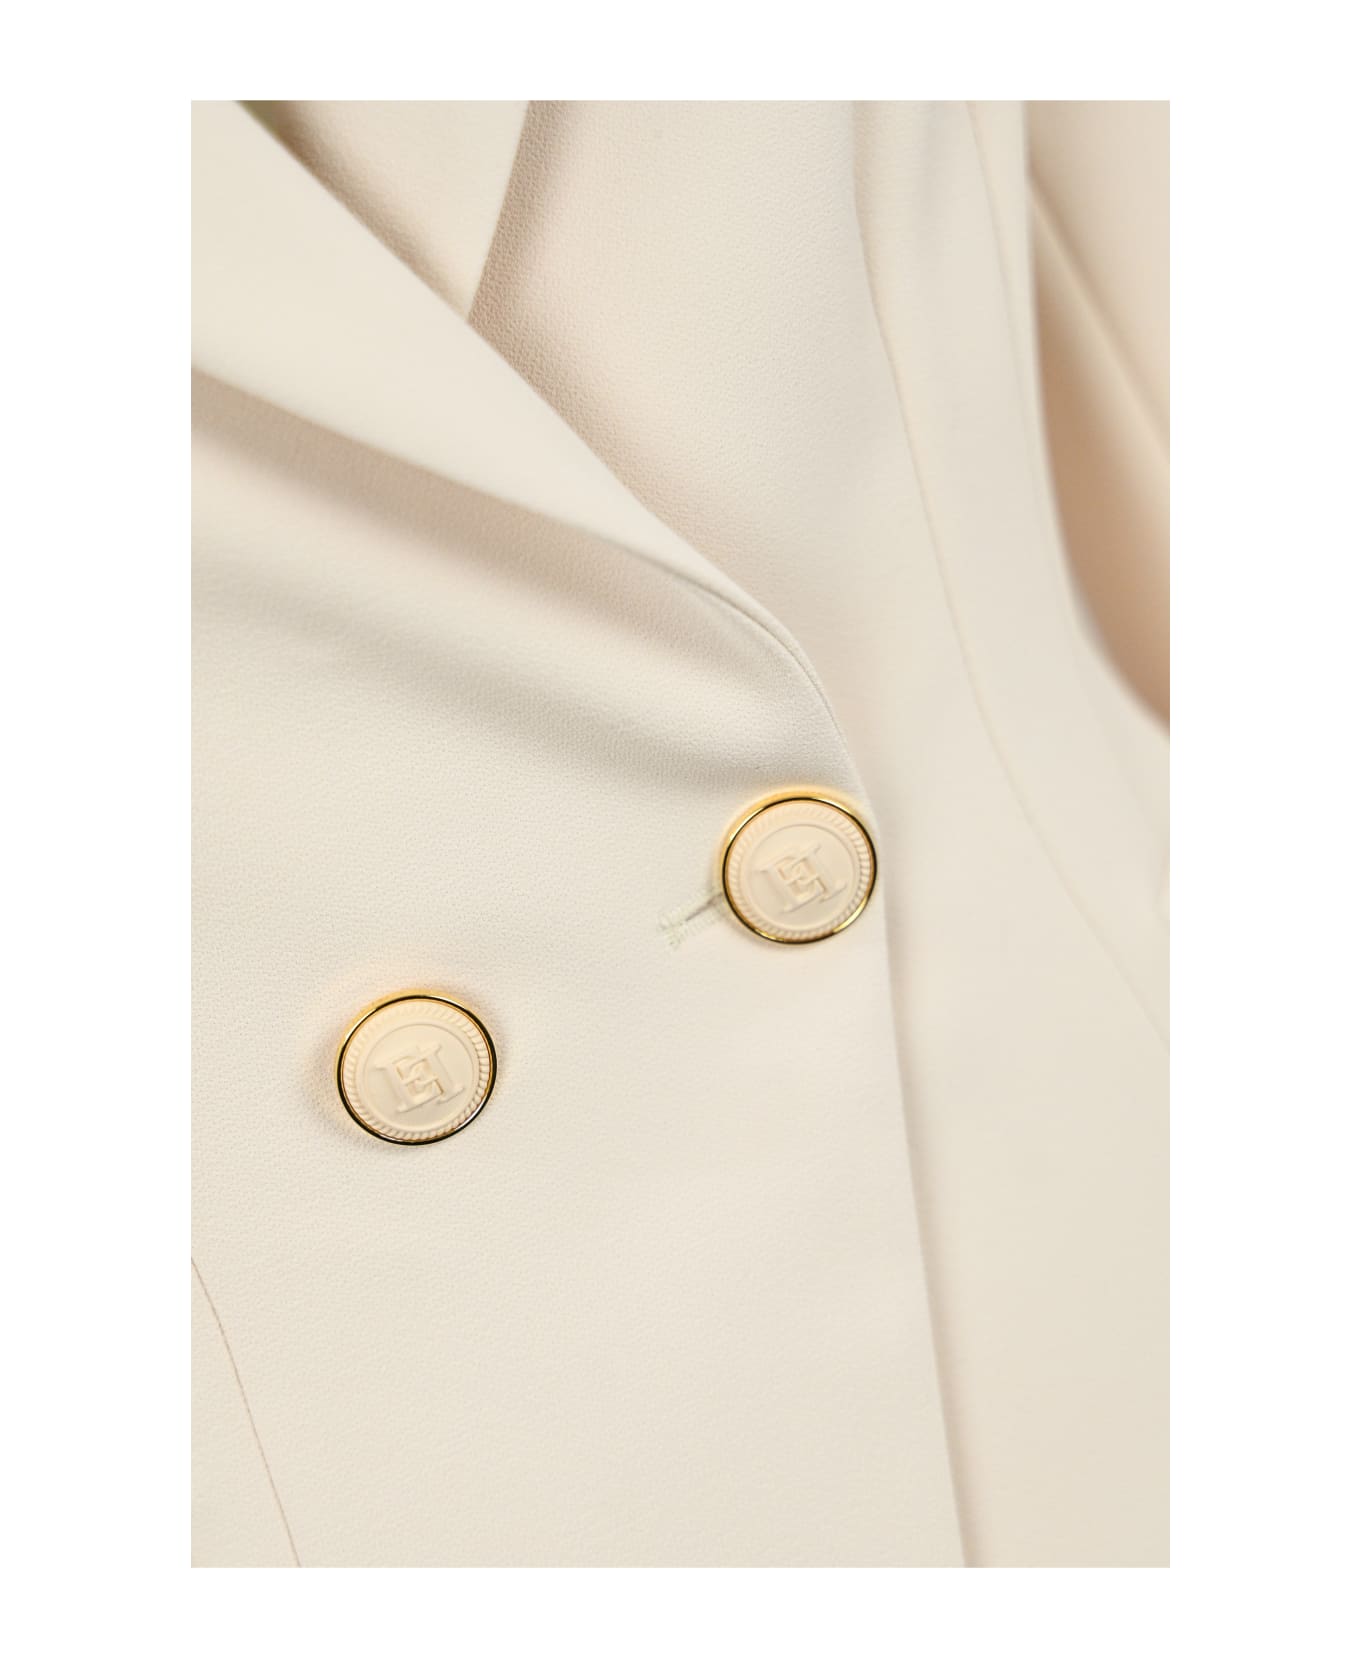 Elisabetta Franchi Double-breasted Crepe Jacket With Logo - White